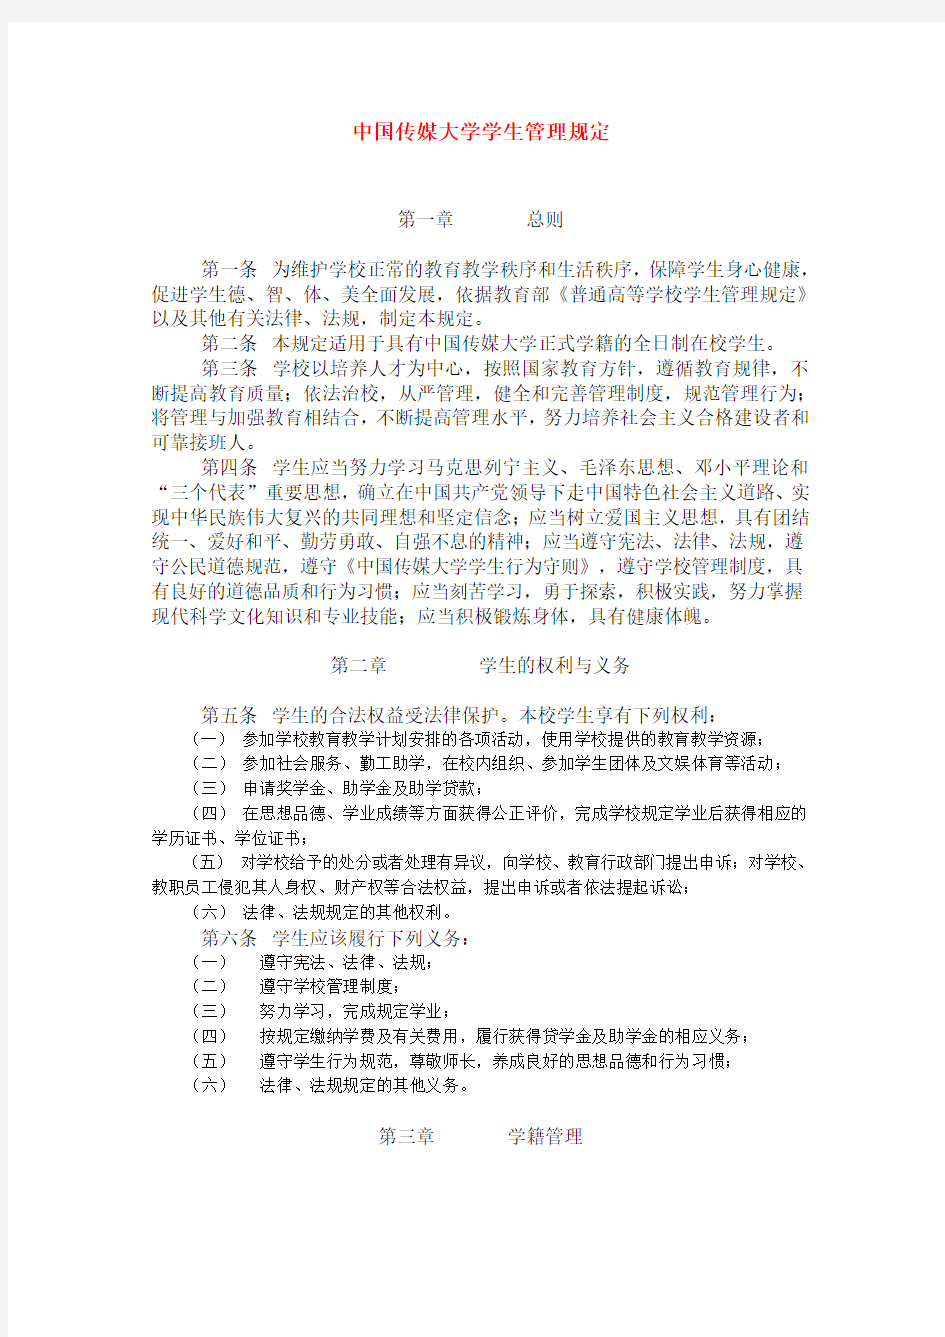 中国传媒大学学生管理规定